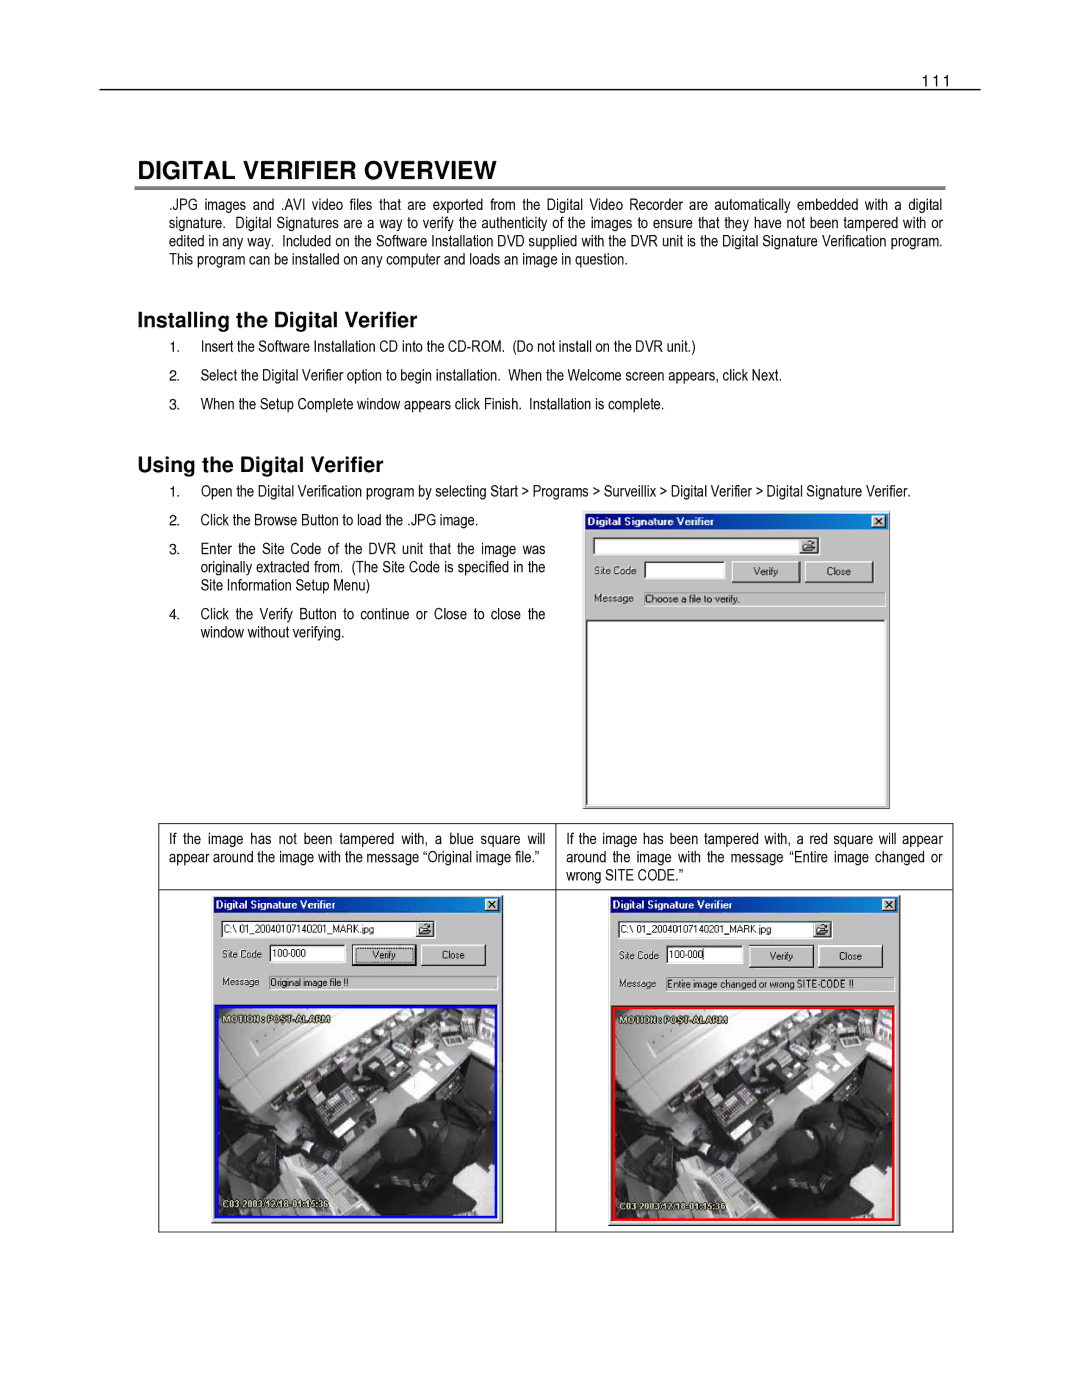 Toshiba HVR32-X, HVR8-X Digital Verifier Overview, Installing the Digital Verifier, Using the Digital Verifier, 111 